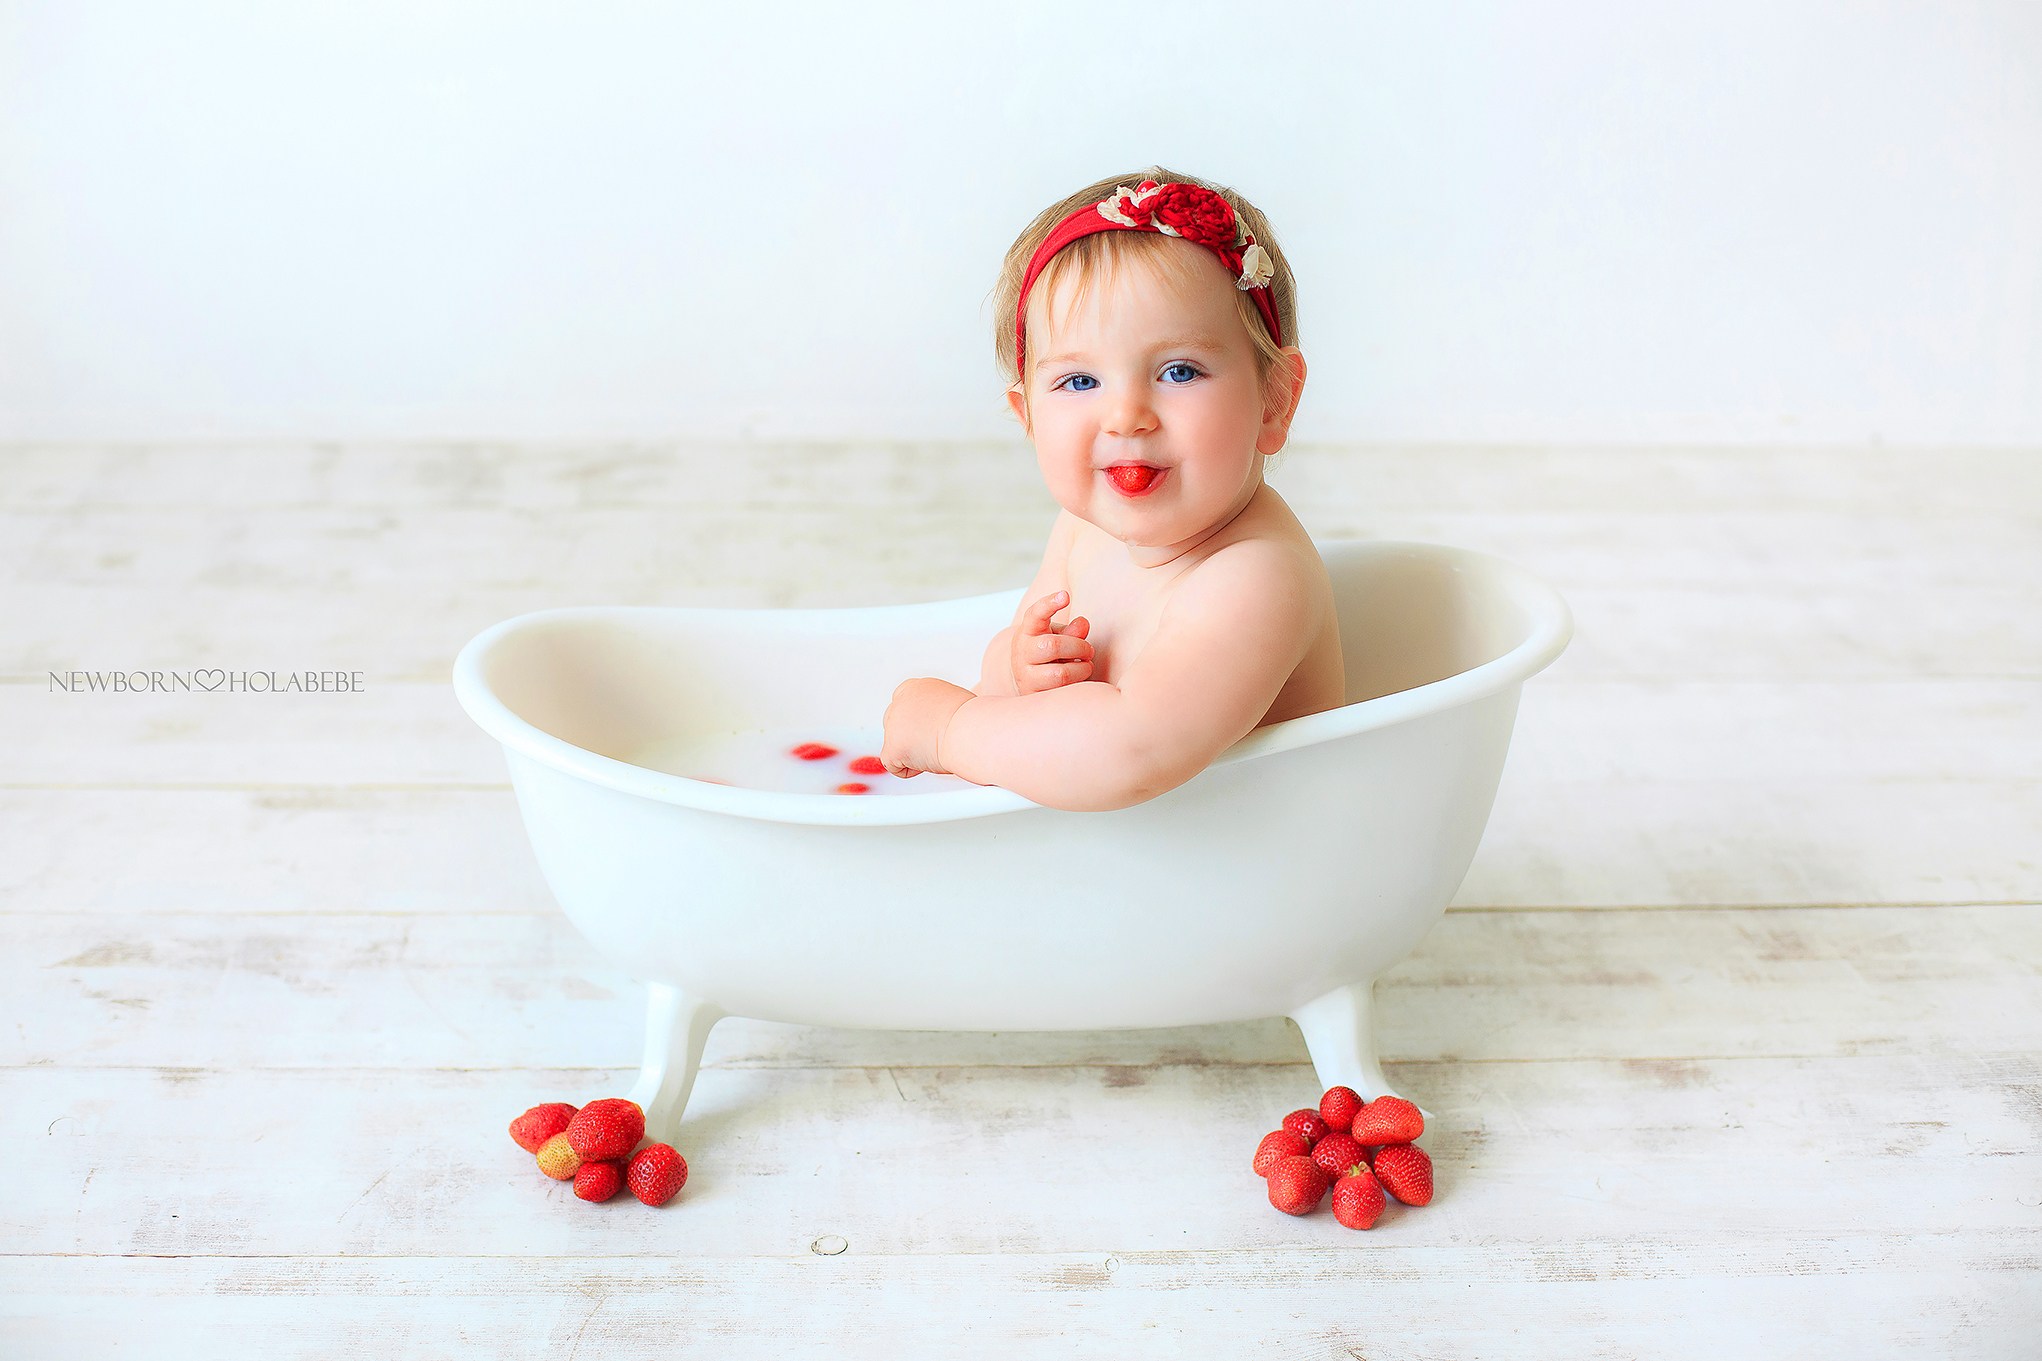 Ванной forum. Малыш в ванной с клубникой. Фотосессия в ванной с клубникой маленьких. Семья в ванне из клубники. Форум про ванны.